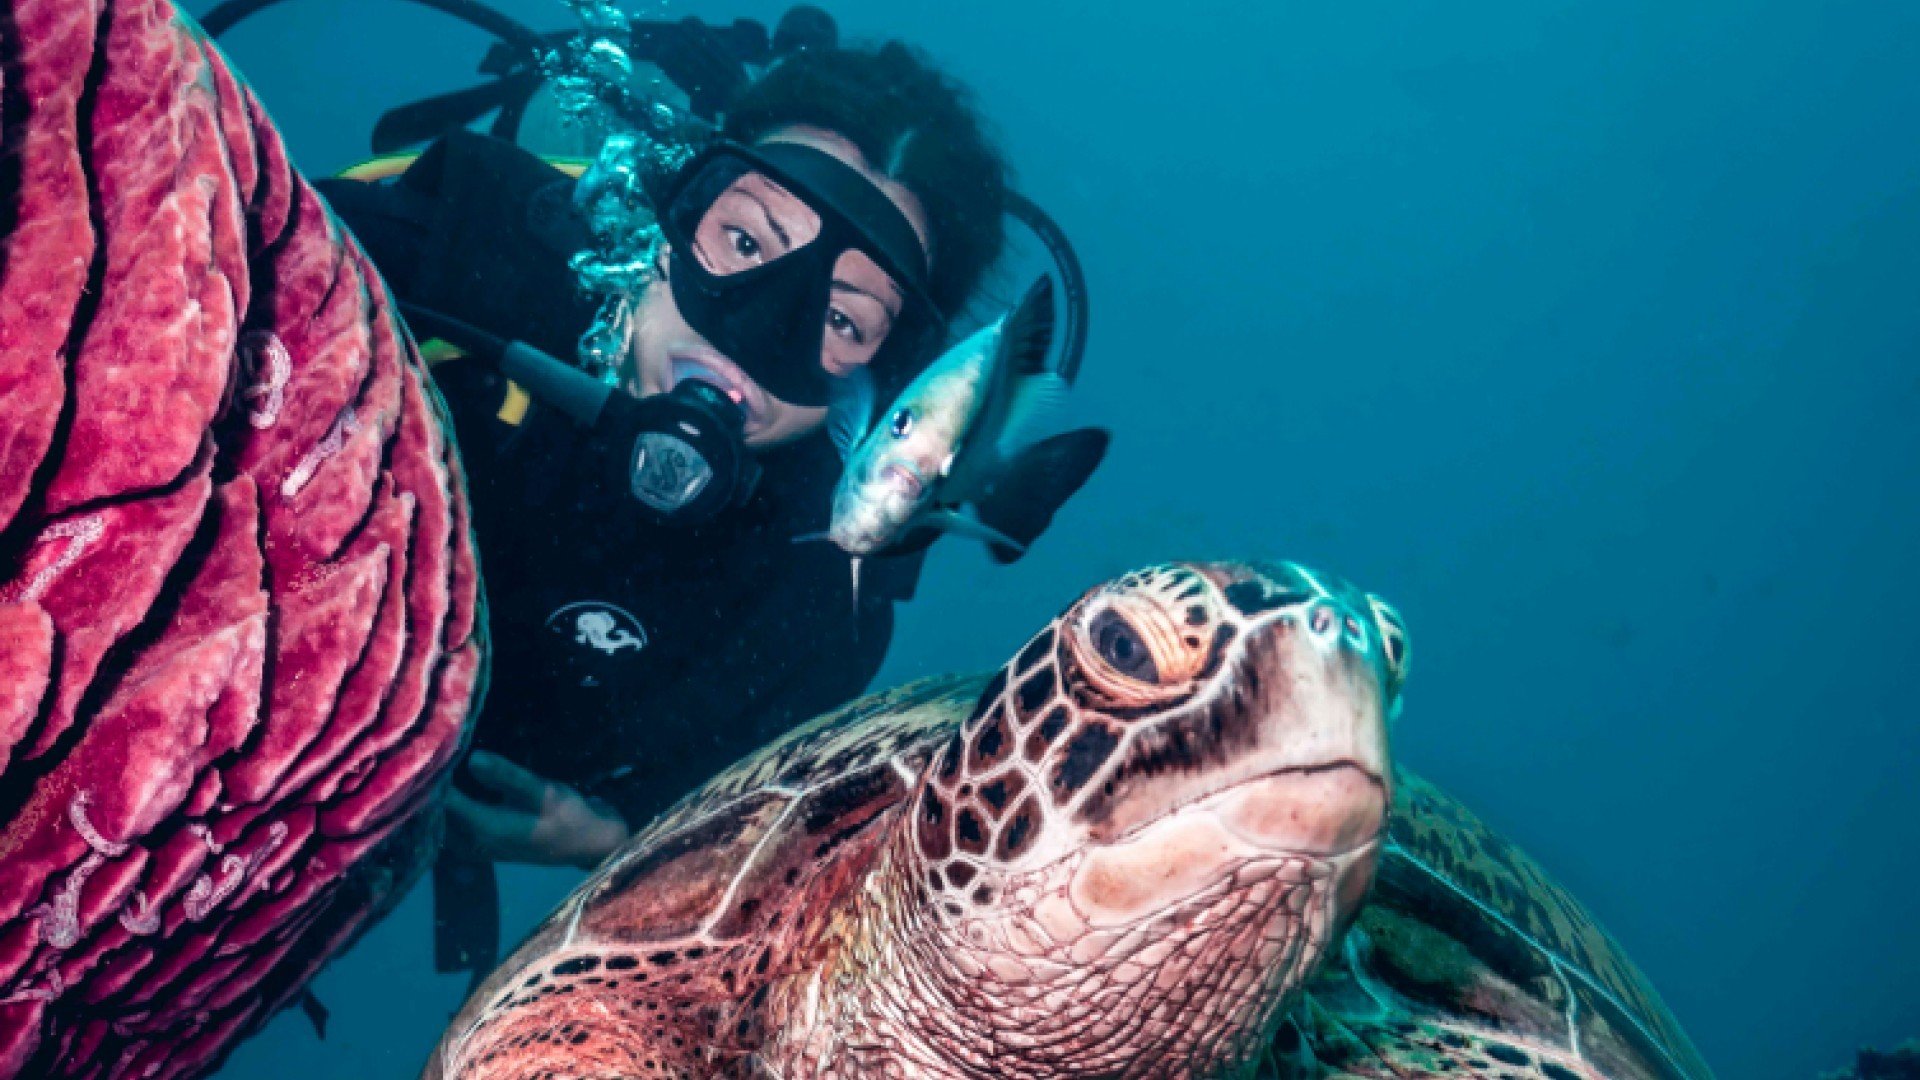 diver and turtle gili trawangan manta dive